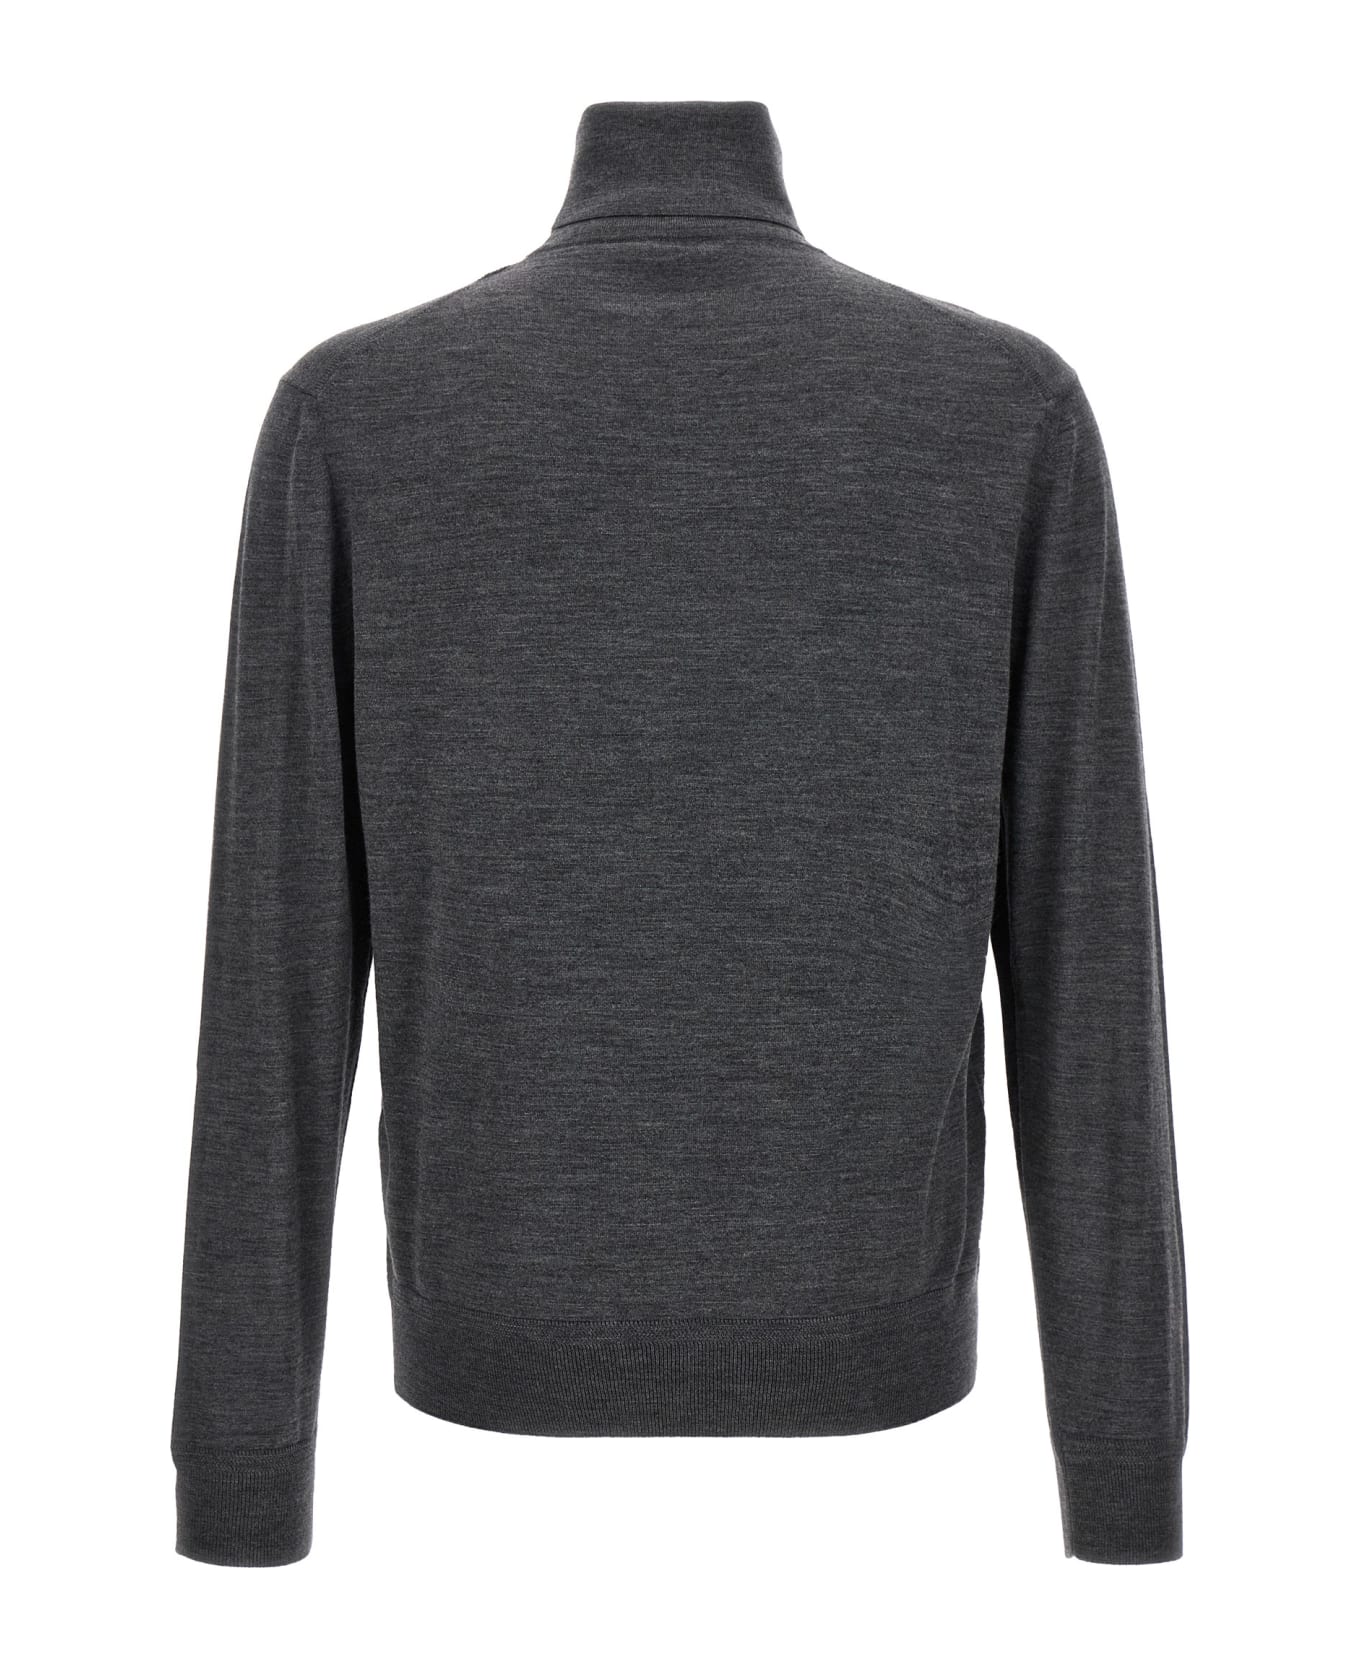 Tom Ford High Neck Sweater - Gray ニットウェア